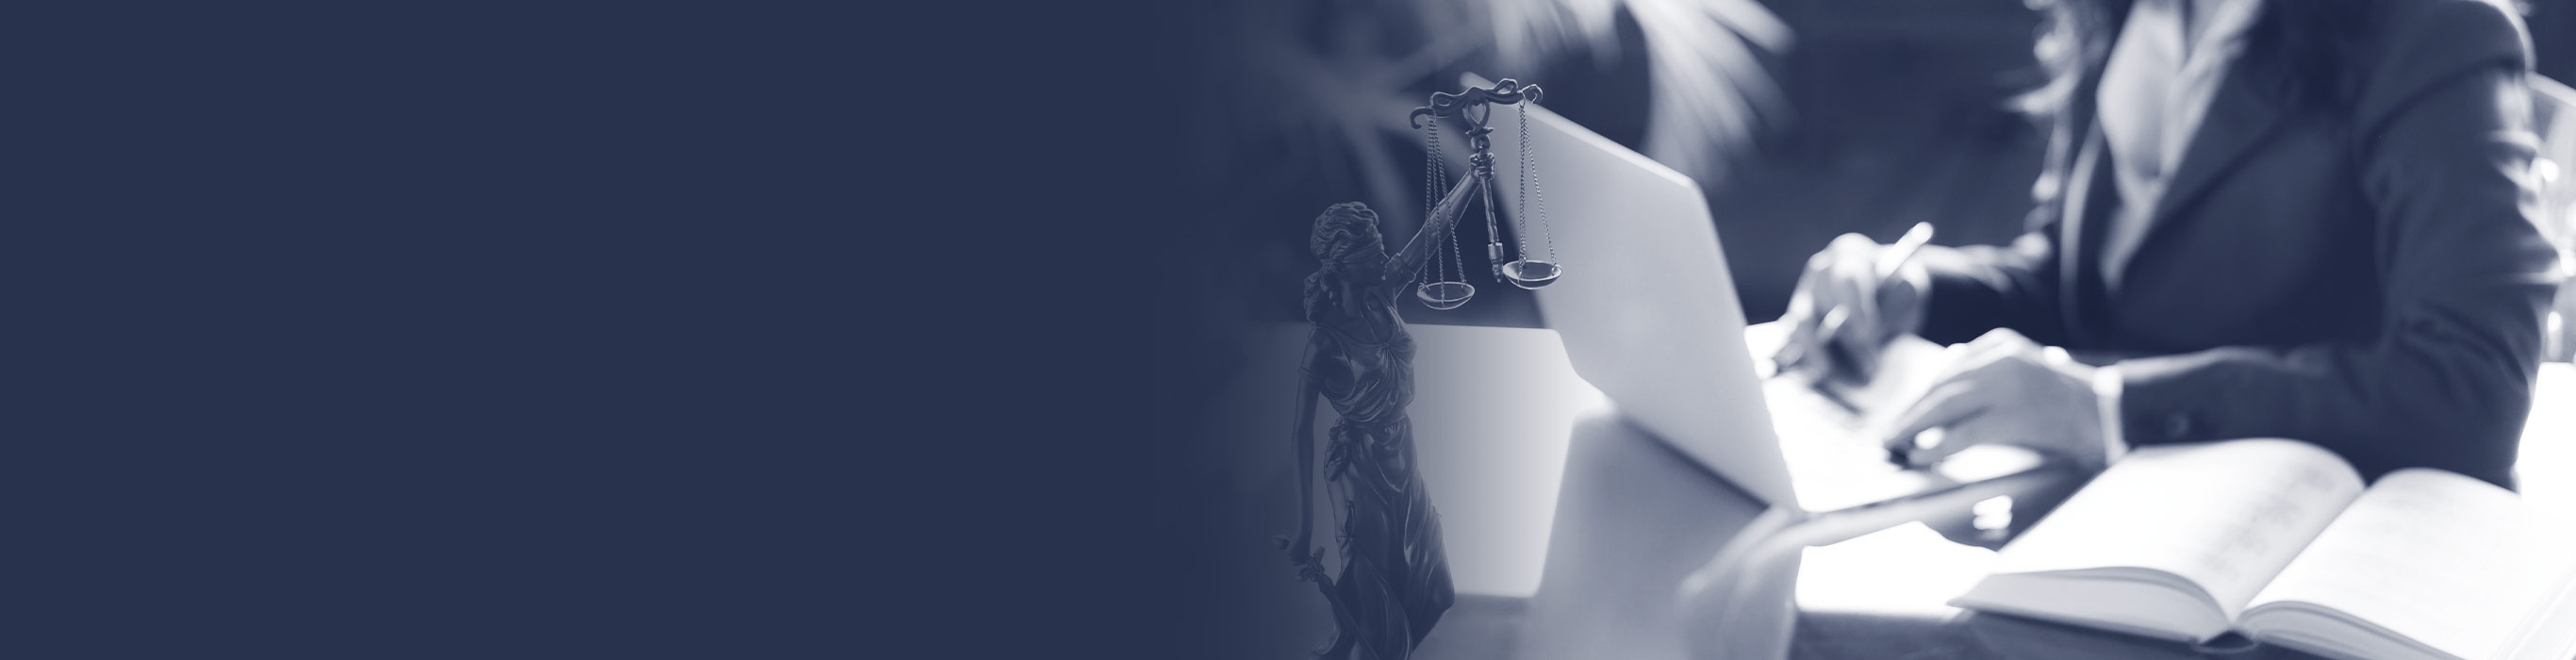 Hukuk Bürosu Açarken Dikkat Edilmesi Gerekenler | GÜNCE